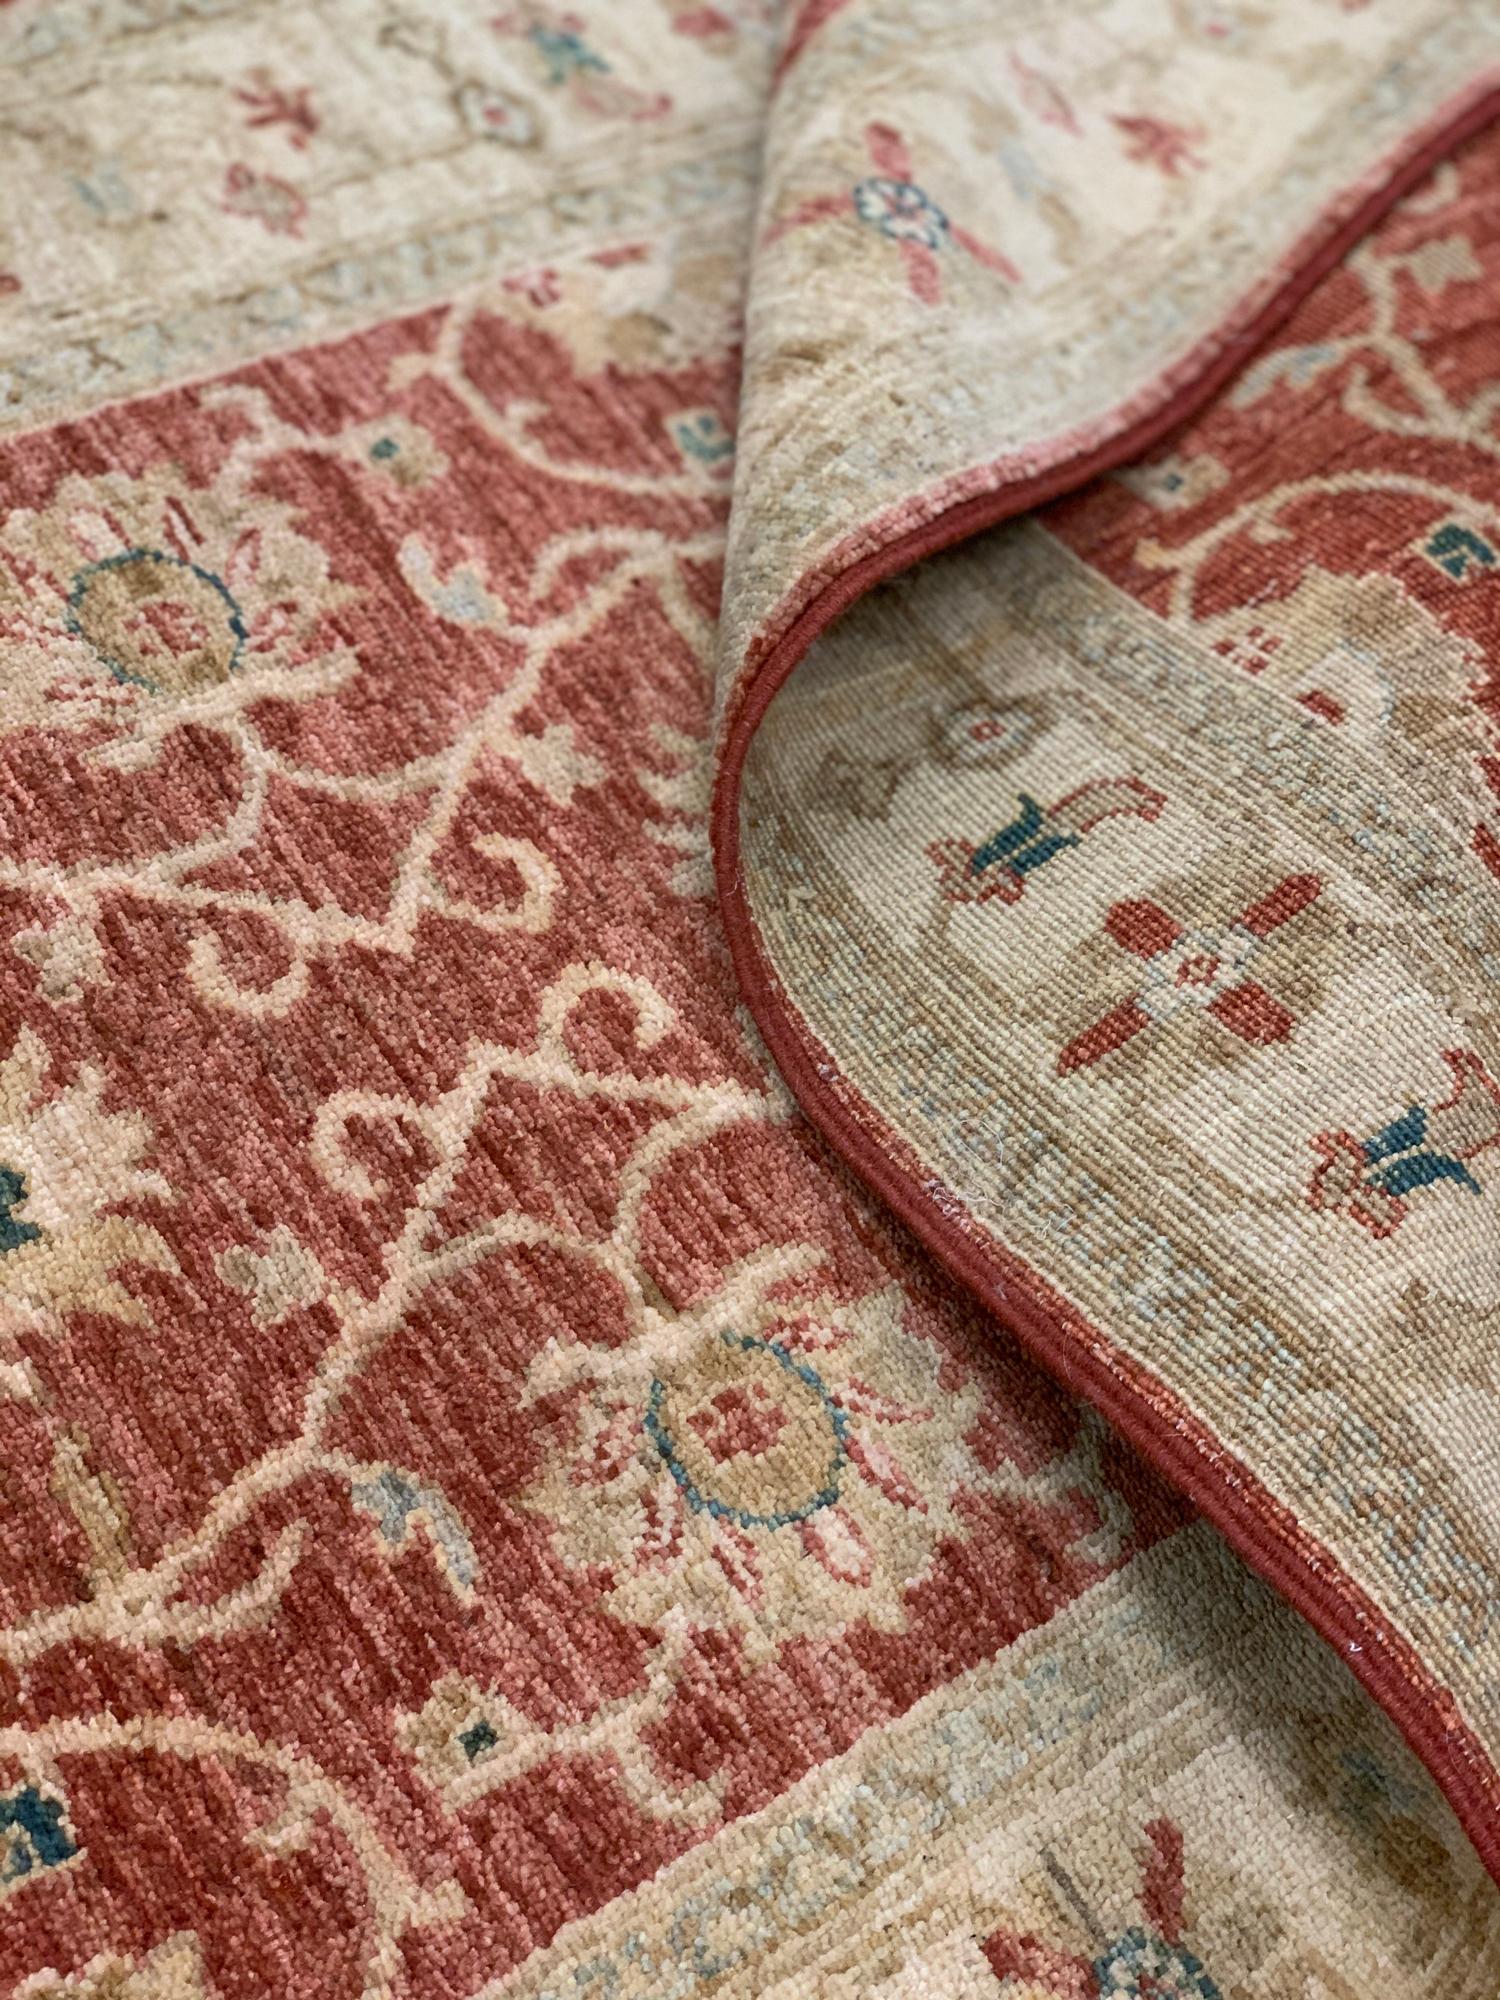 Dieser elegante Wollteppich ist ein Ziegler-Läufer. Zu Beginn des 21. Jahrhunderts, um 2010, von Hand gewebt. Das Design zeigt florale Muster, die traditionell in Ziegler-Teppichen und -Teppichen zu finden sind. Die rustikale Farbpalette und das